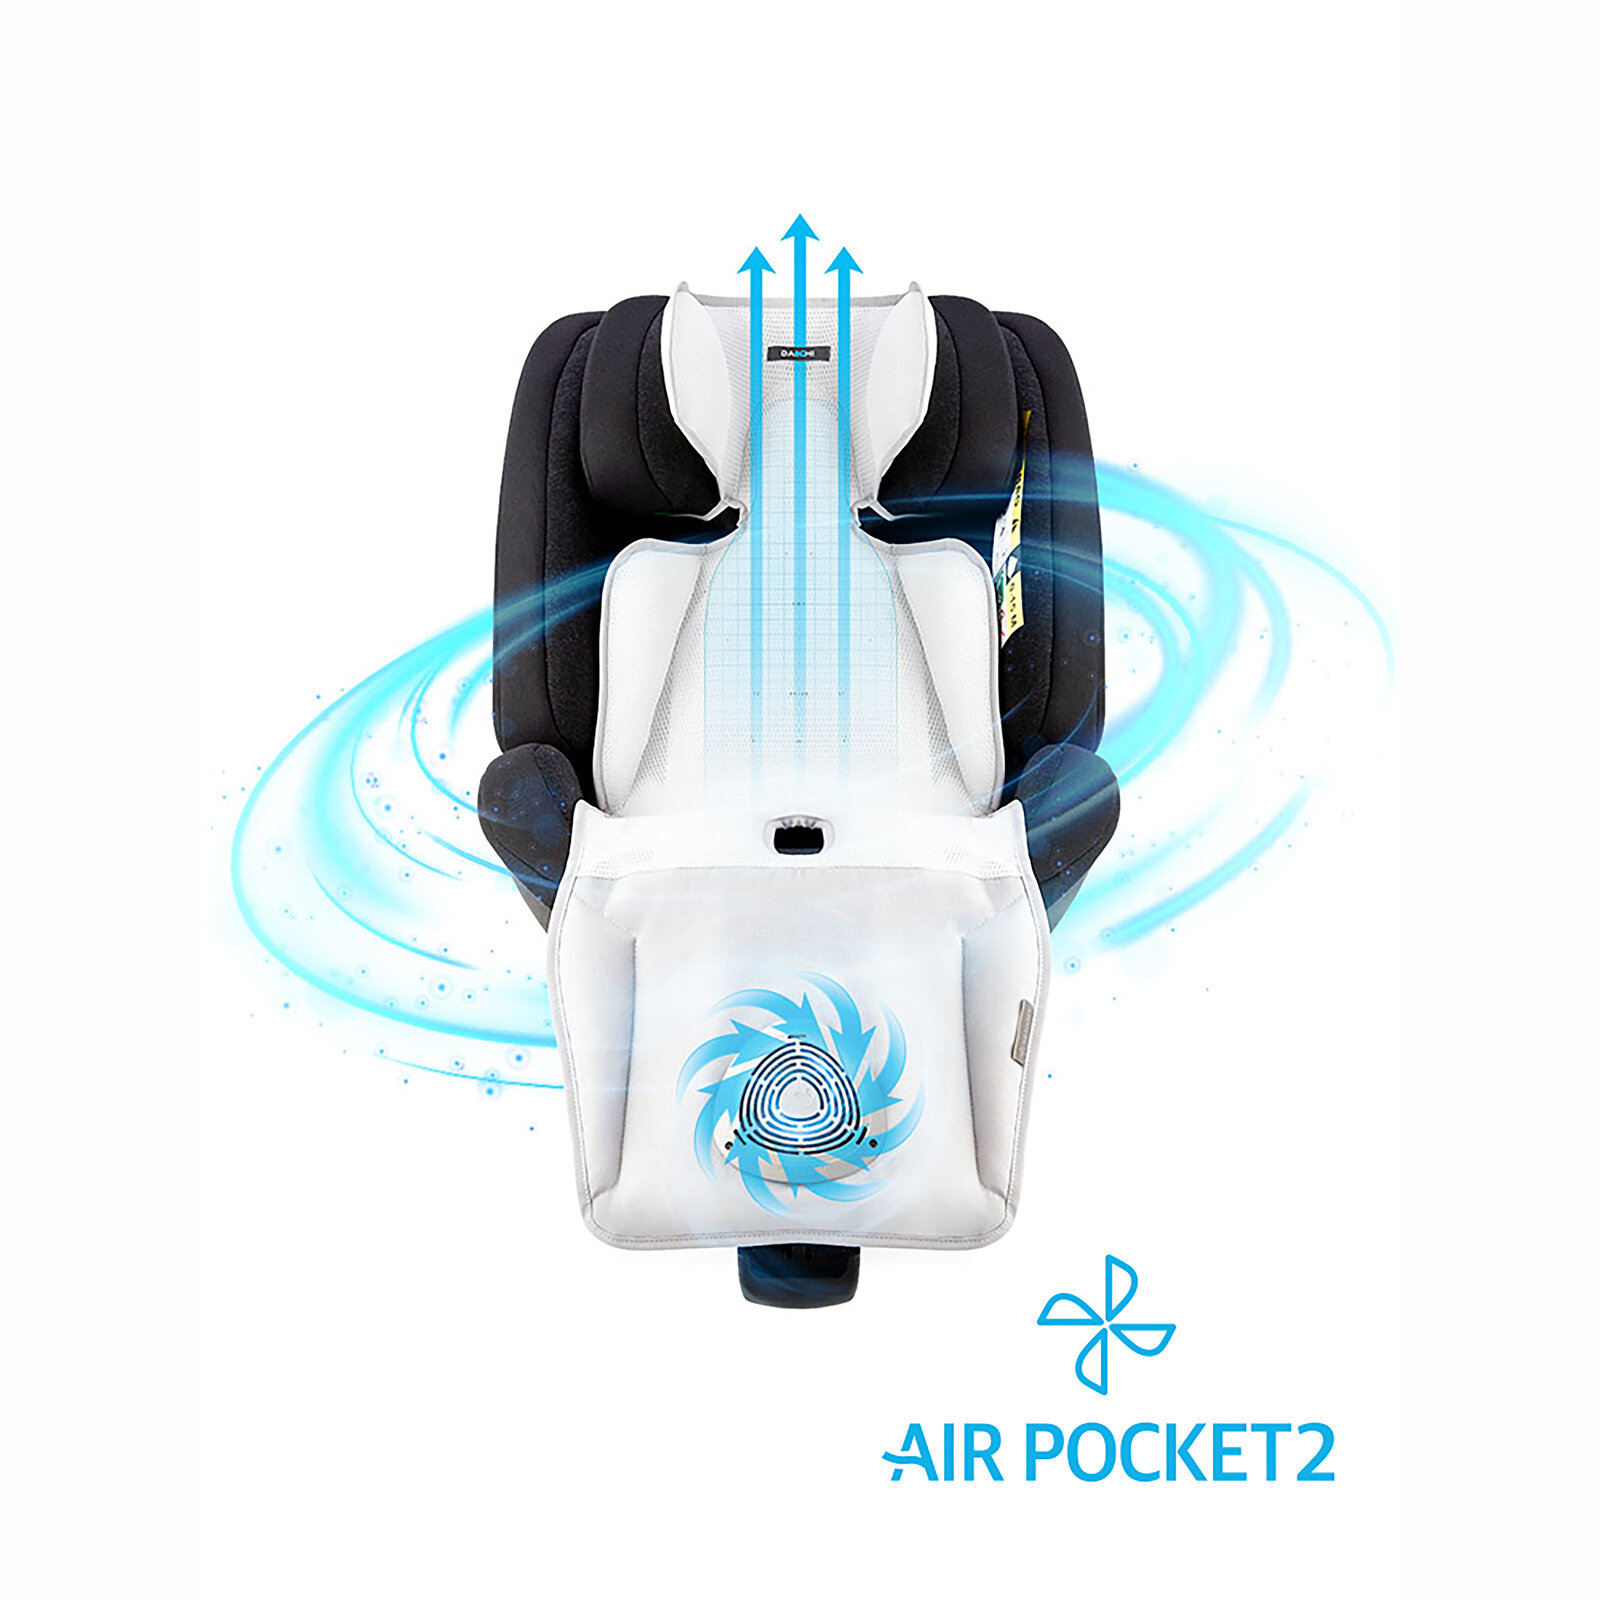 Air Pocket 2 Ter Önleyici Ped